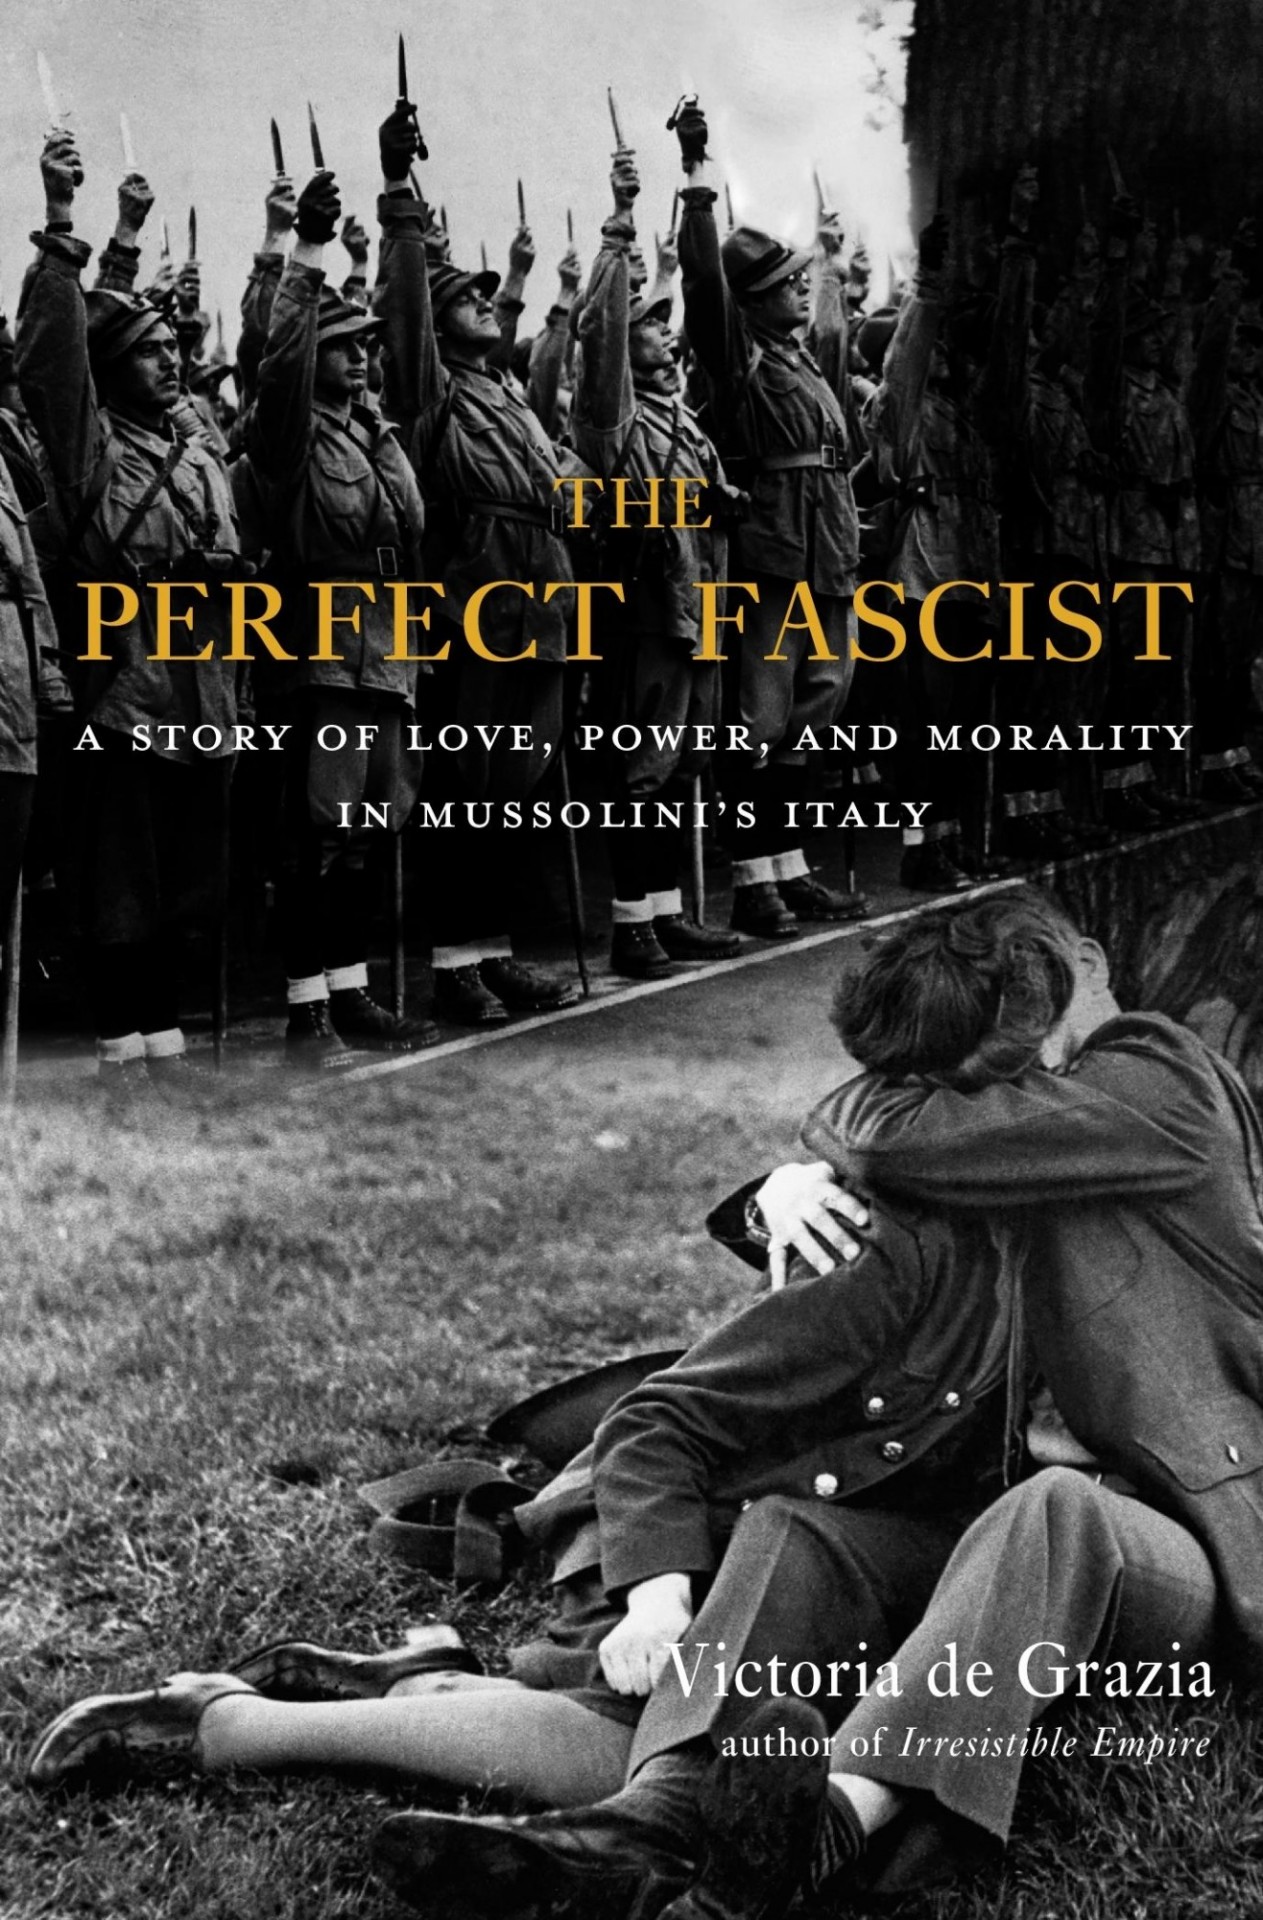 "The Perfect Fascist" by Victoria de Grazia